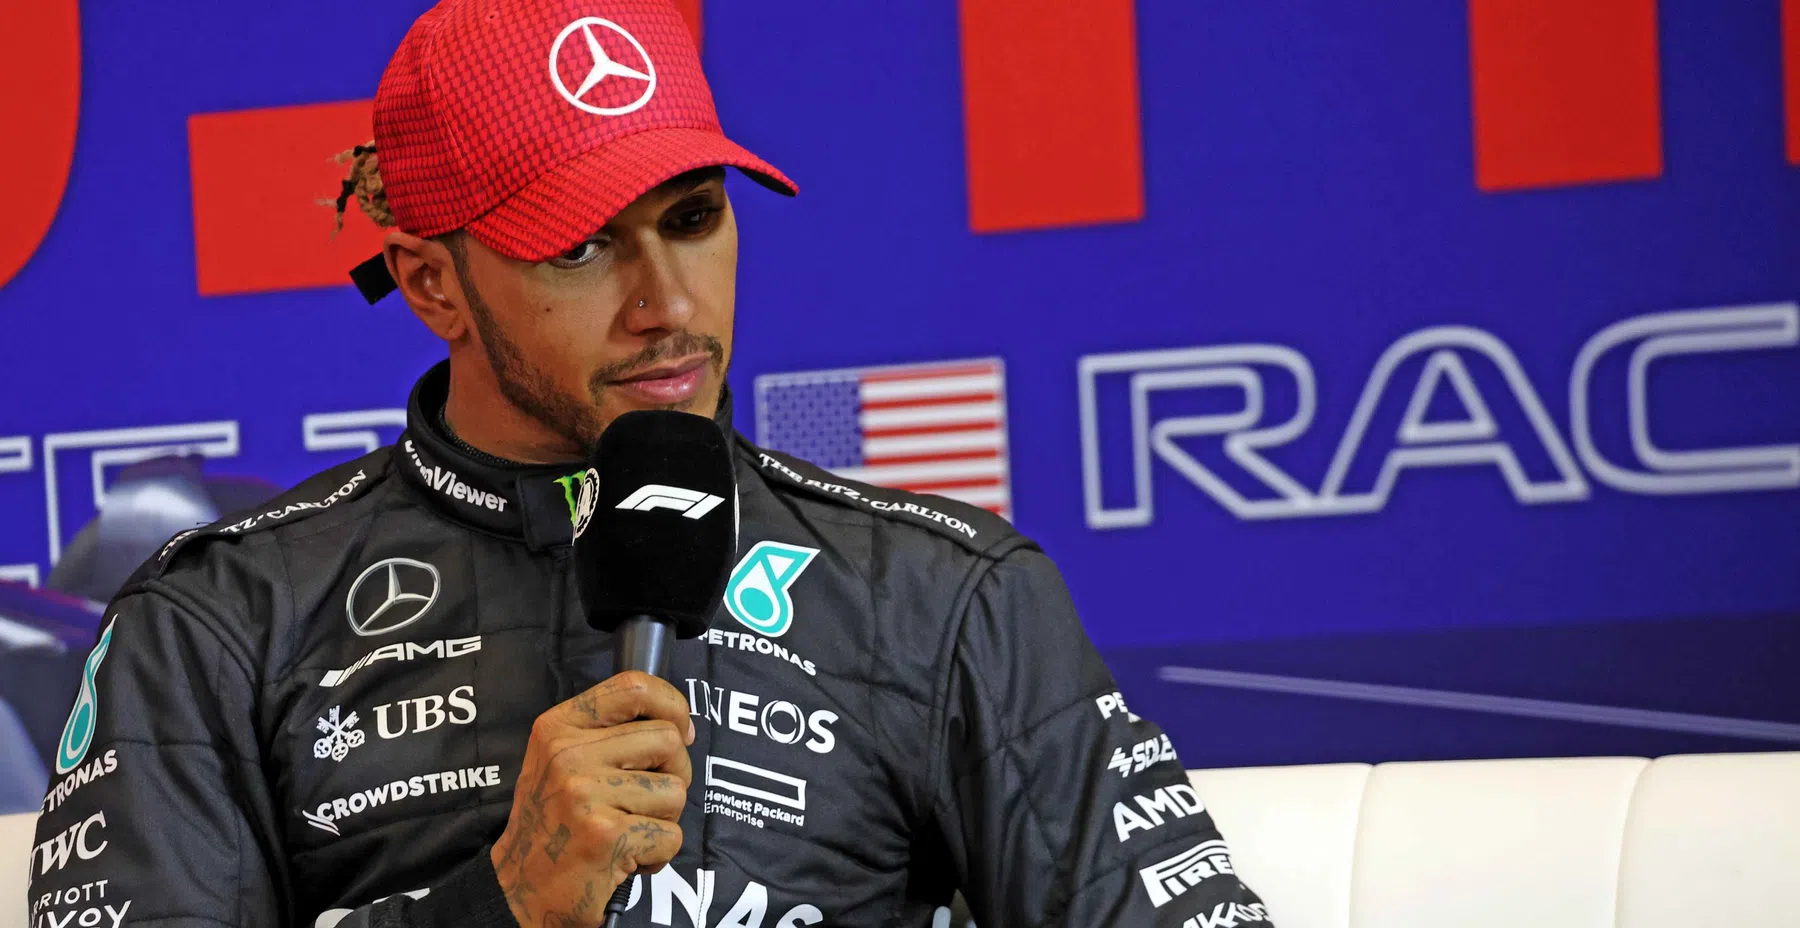 Hamilton aprendeu muito com Verstappen no sprint dos Estados Unidos